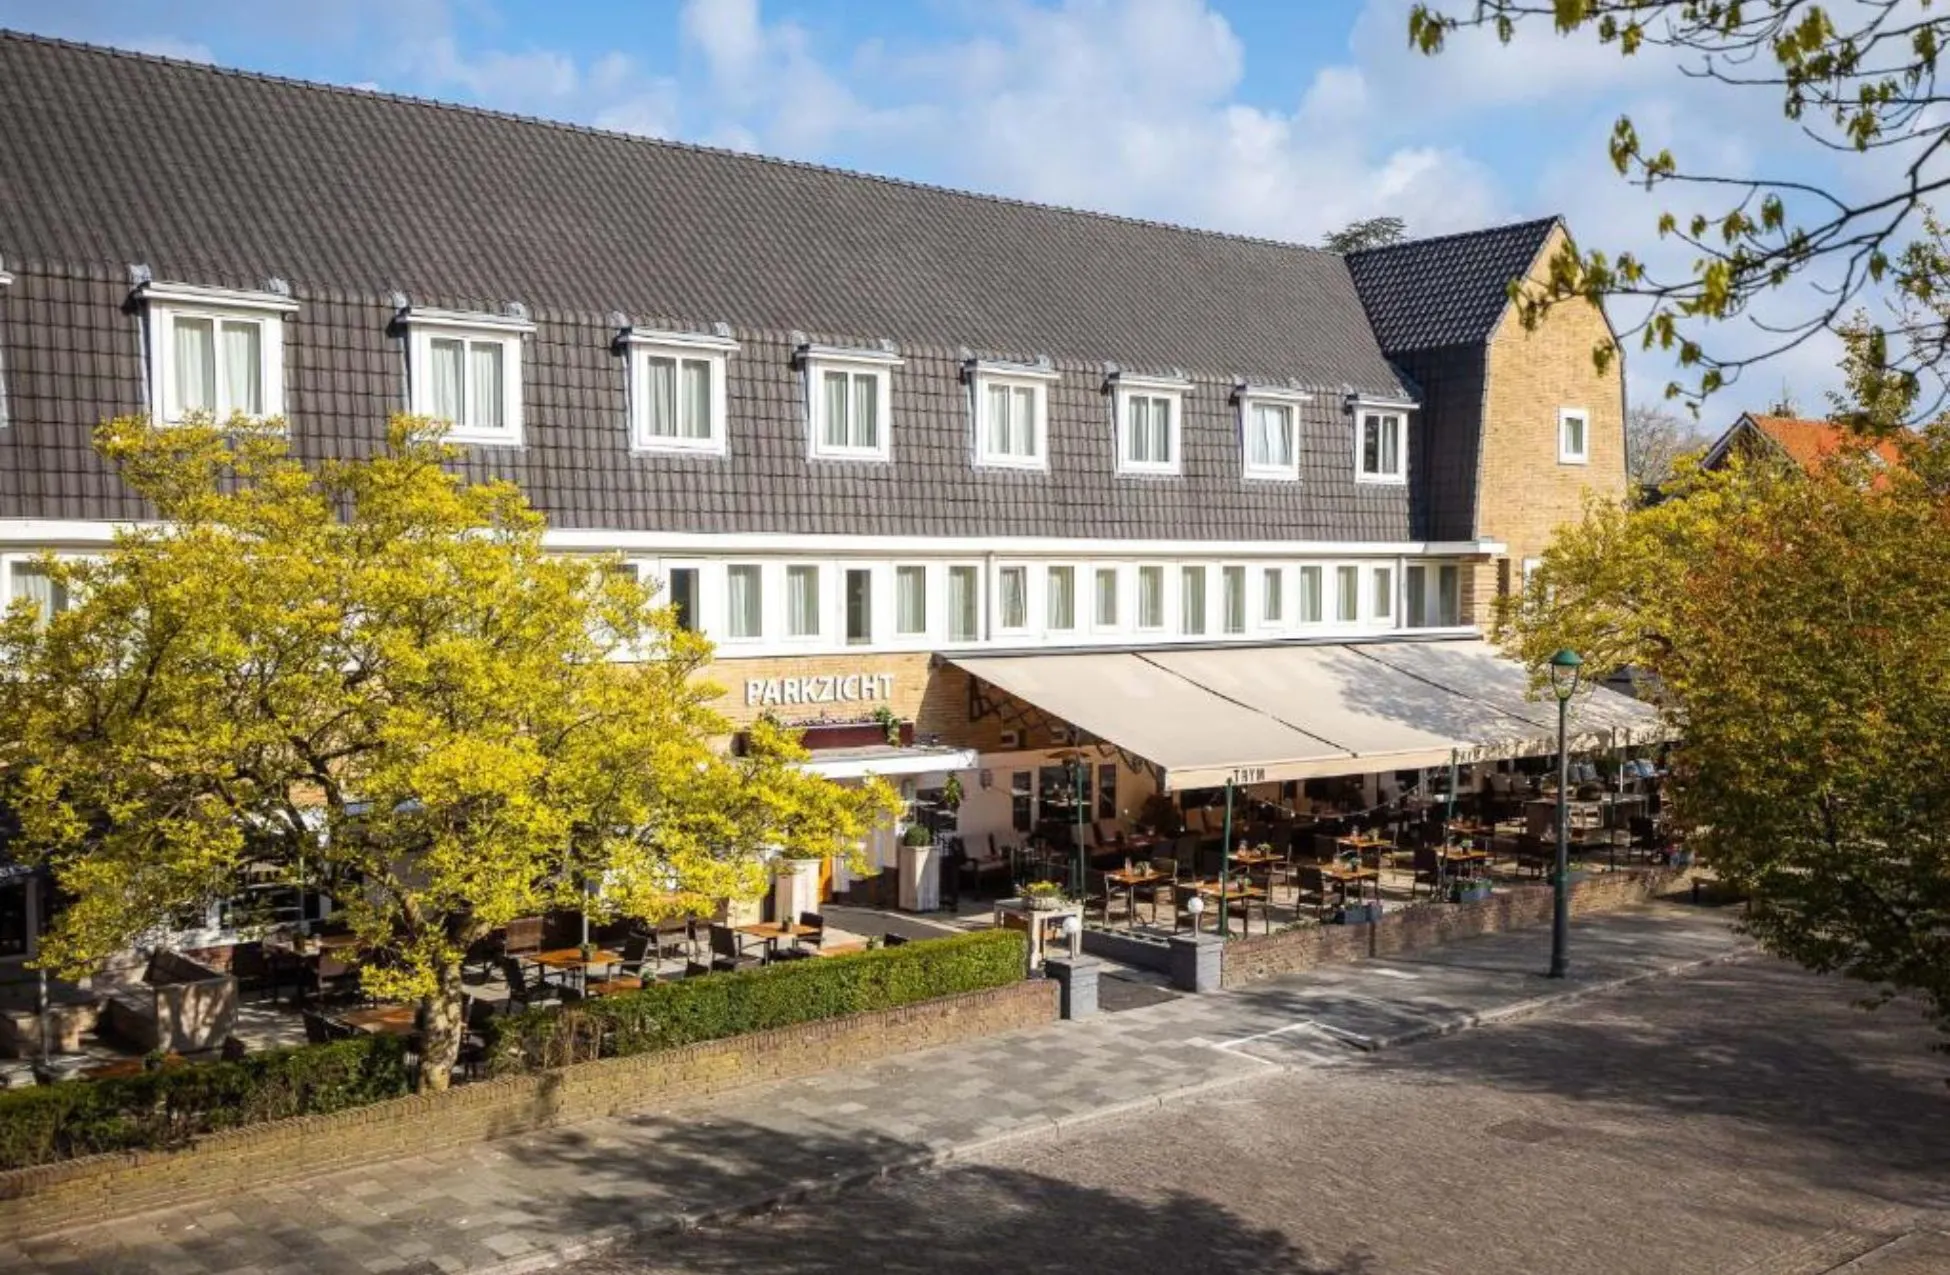 Hotel Parkzicht Eindhoven - Best Hotels In Eindhoven